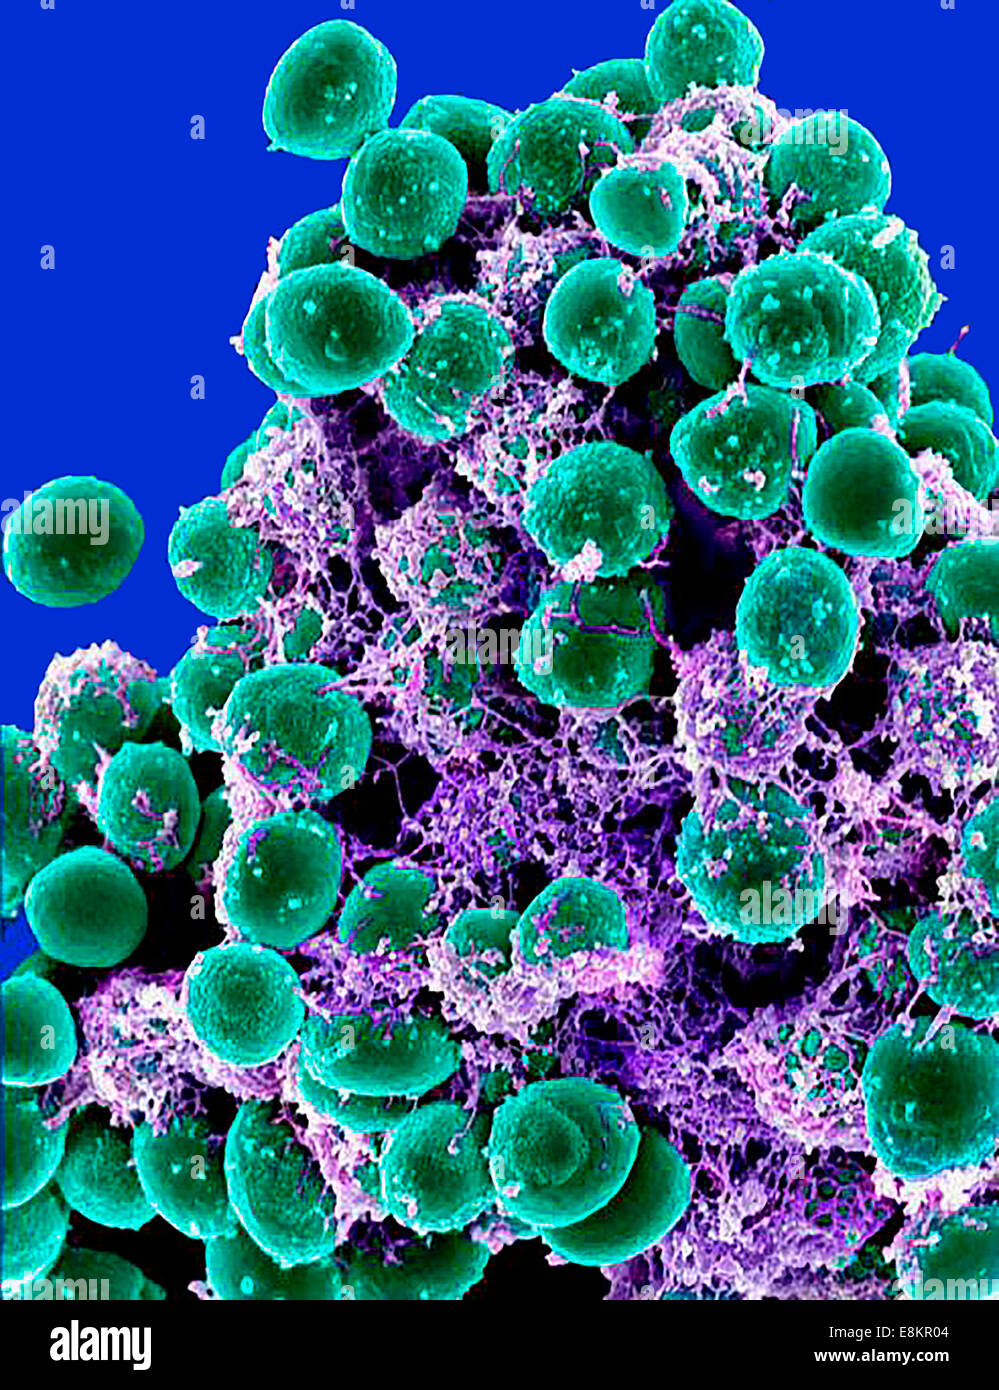 Micrografia elettronica a scansione di ammassarsi di Staphylococcus epidermidis batteri nella matrice extracellulare, che collega le cellule e Foto Stock